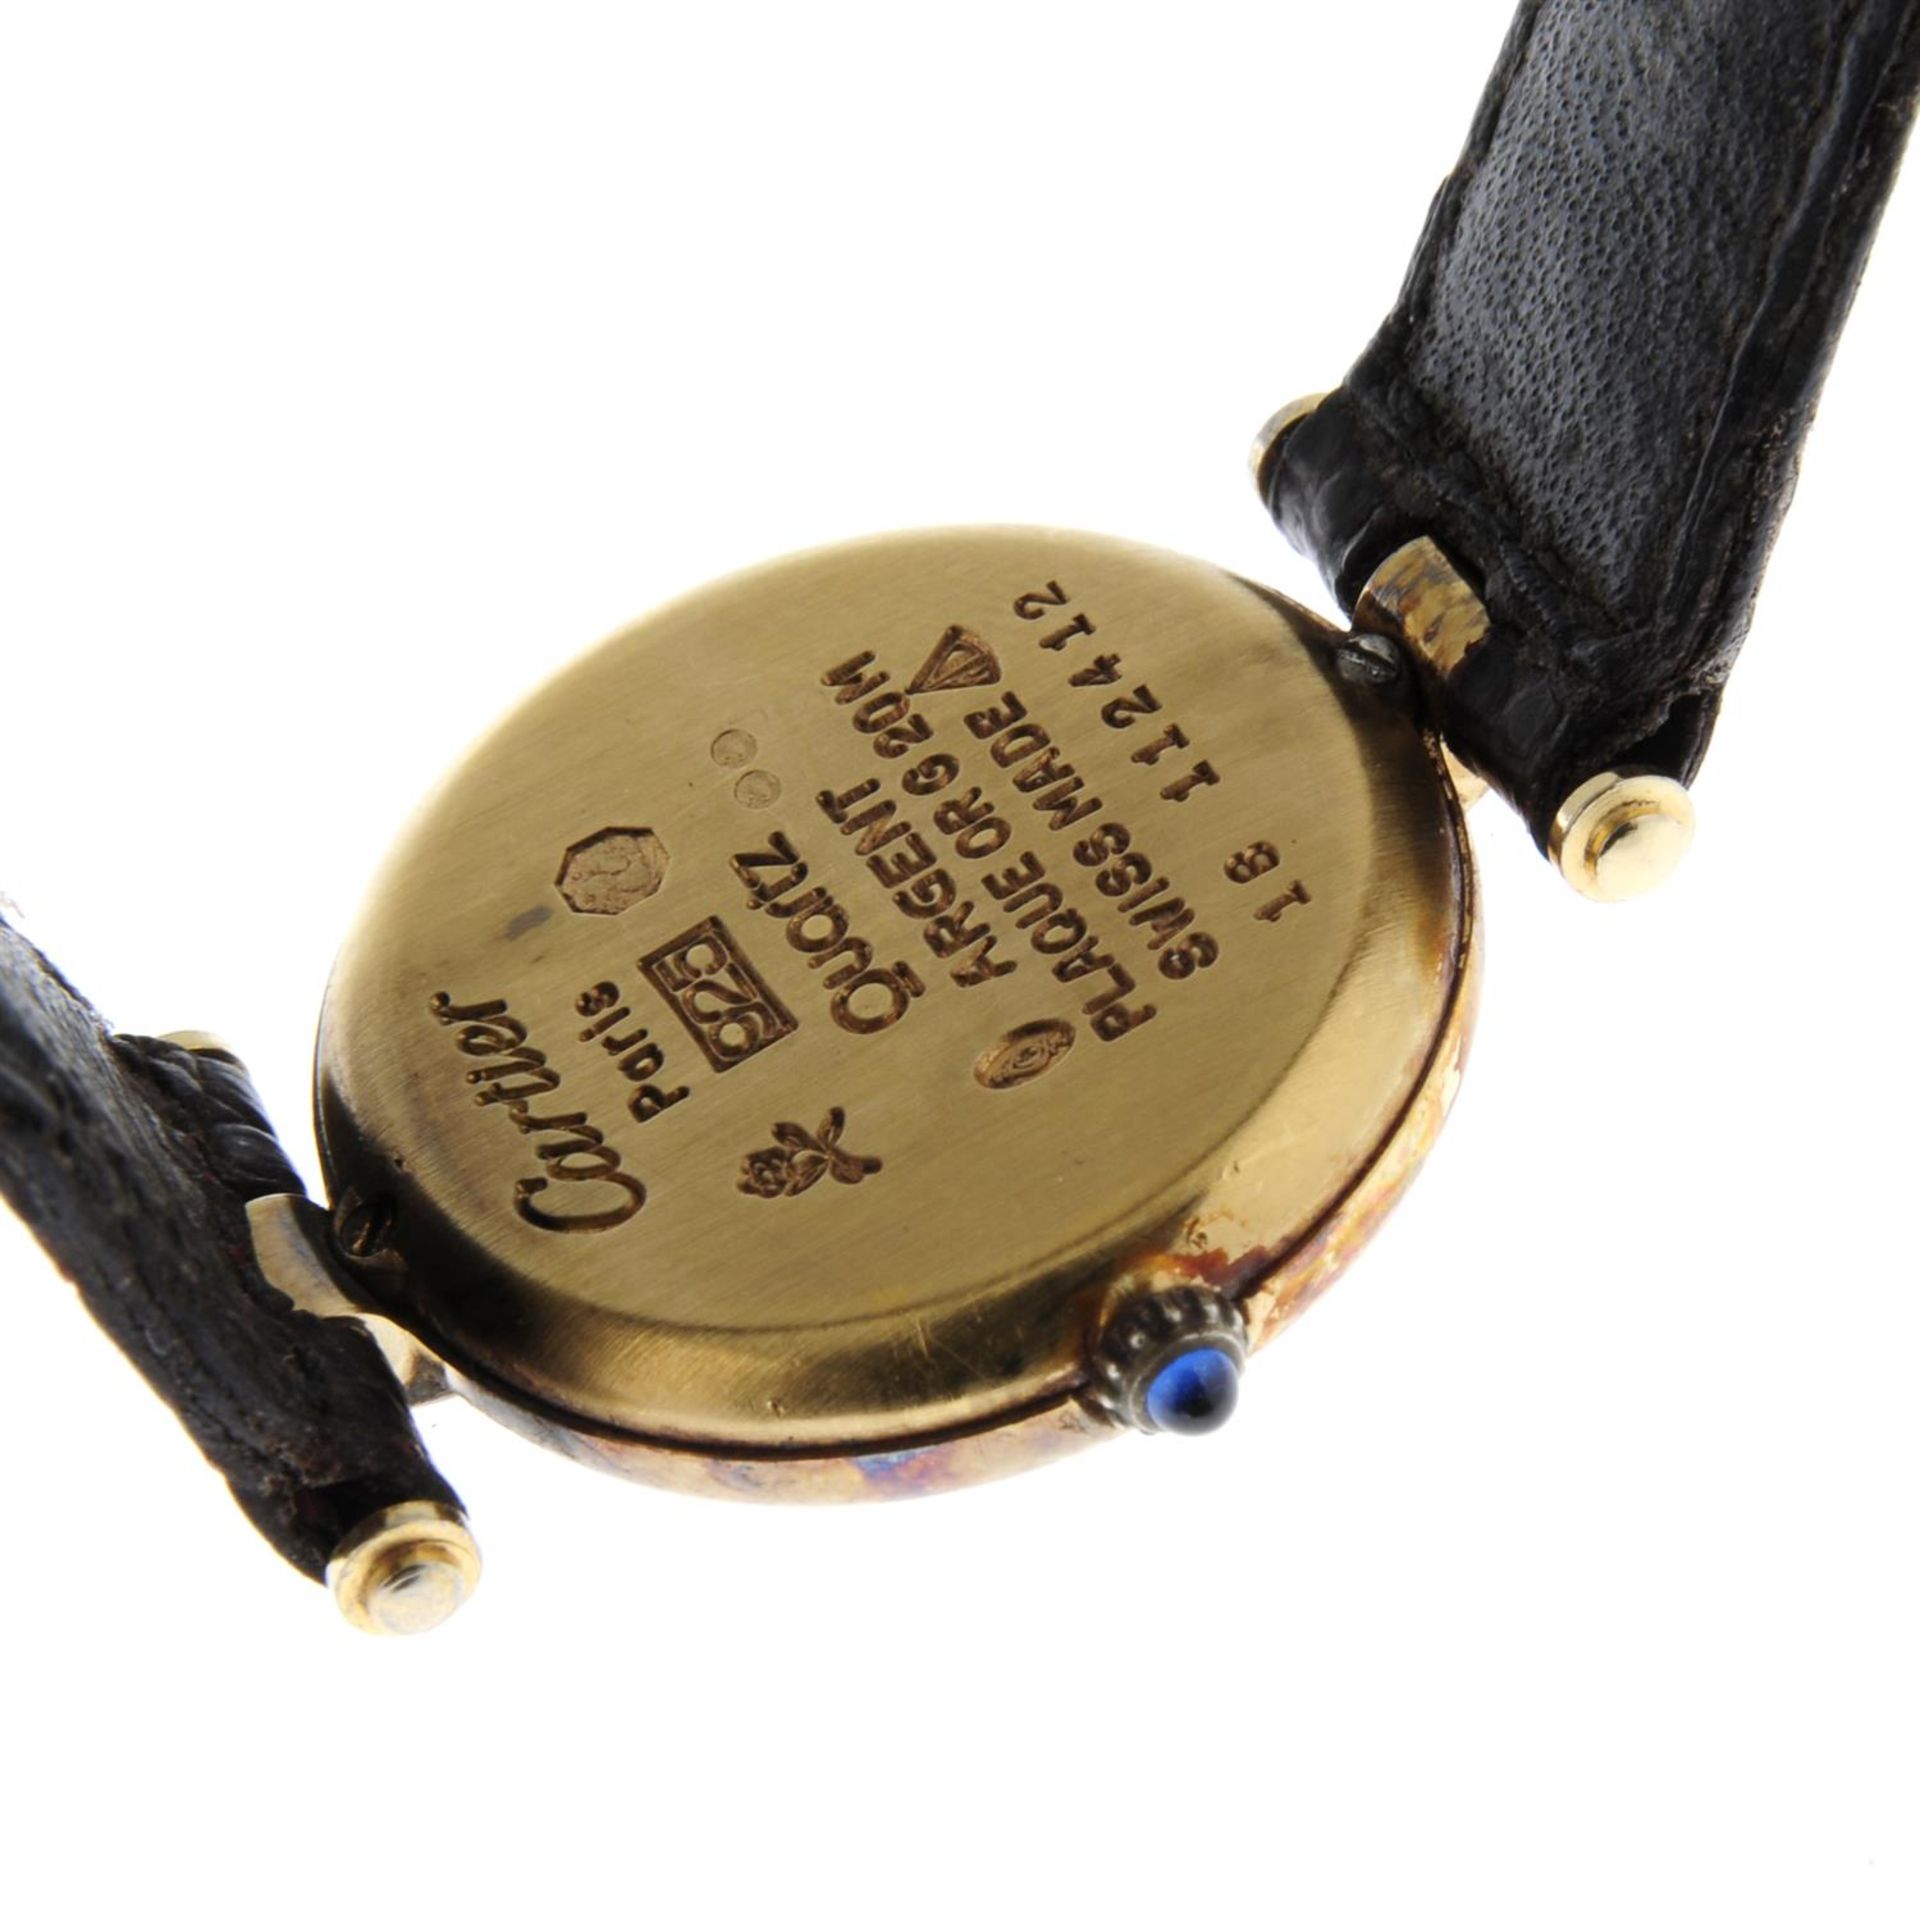 CARTIER - a gold plated silver Must de Cartier wrist watch, 24mm. - Image 2 of 5